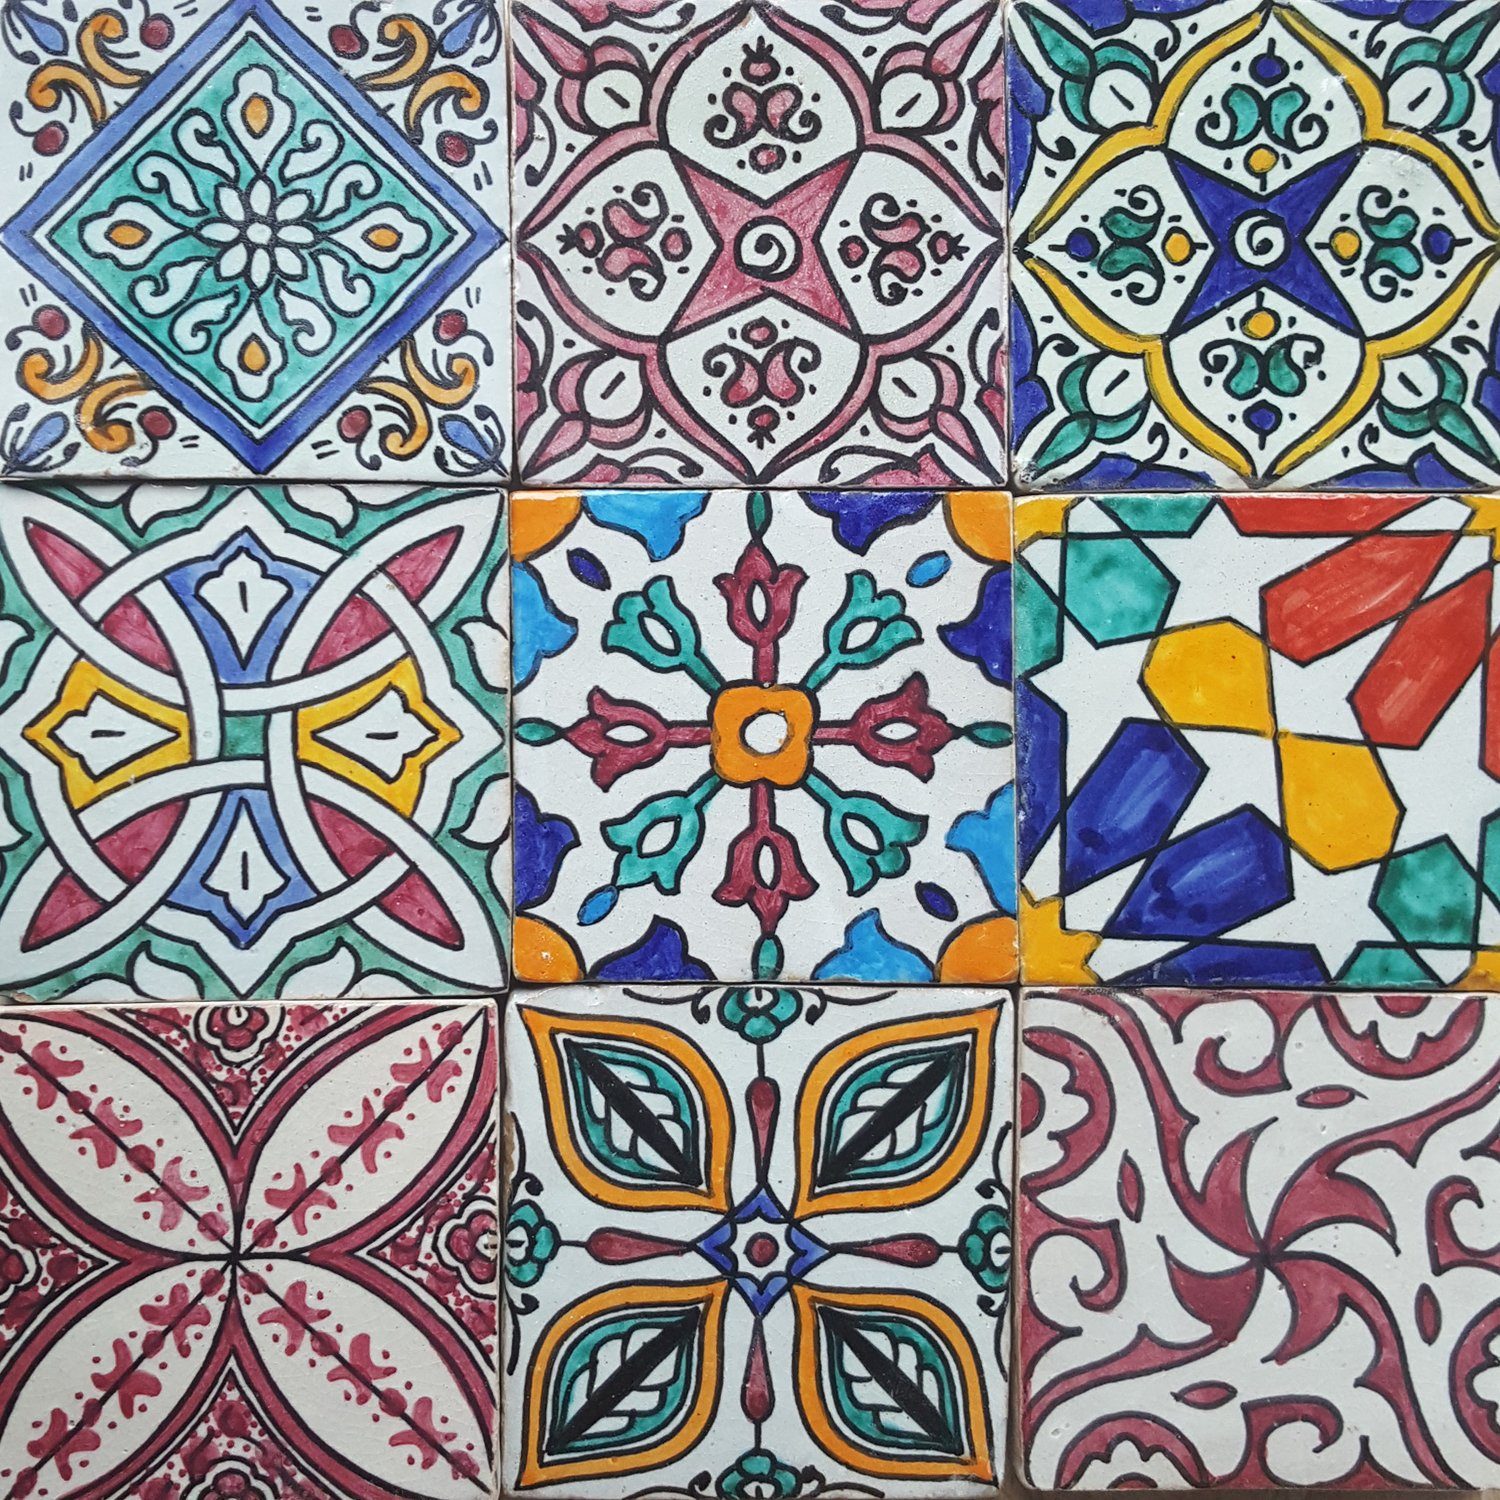 Casa Moro Wandfliese Orientalische Fliesen Bunt Mix 10x10 cm 9er Packung, Mehrfarbig, für schöne Küche Dusche Badezimmer, HBF8410, Kunsthandwerk aus Marokko Wandfliesen, handbemalte marokkanische Fliesen Patchwork